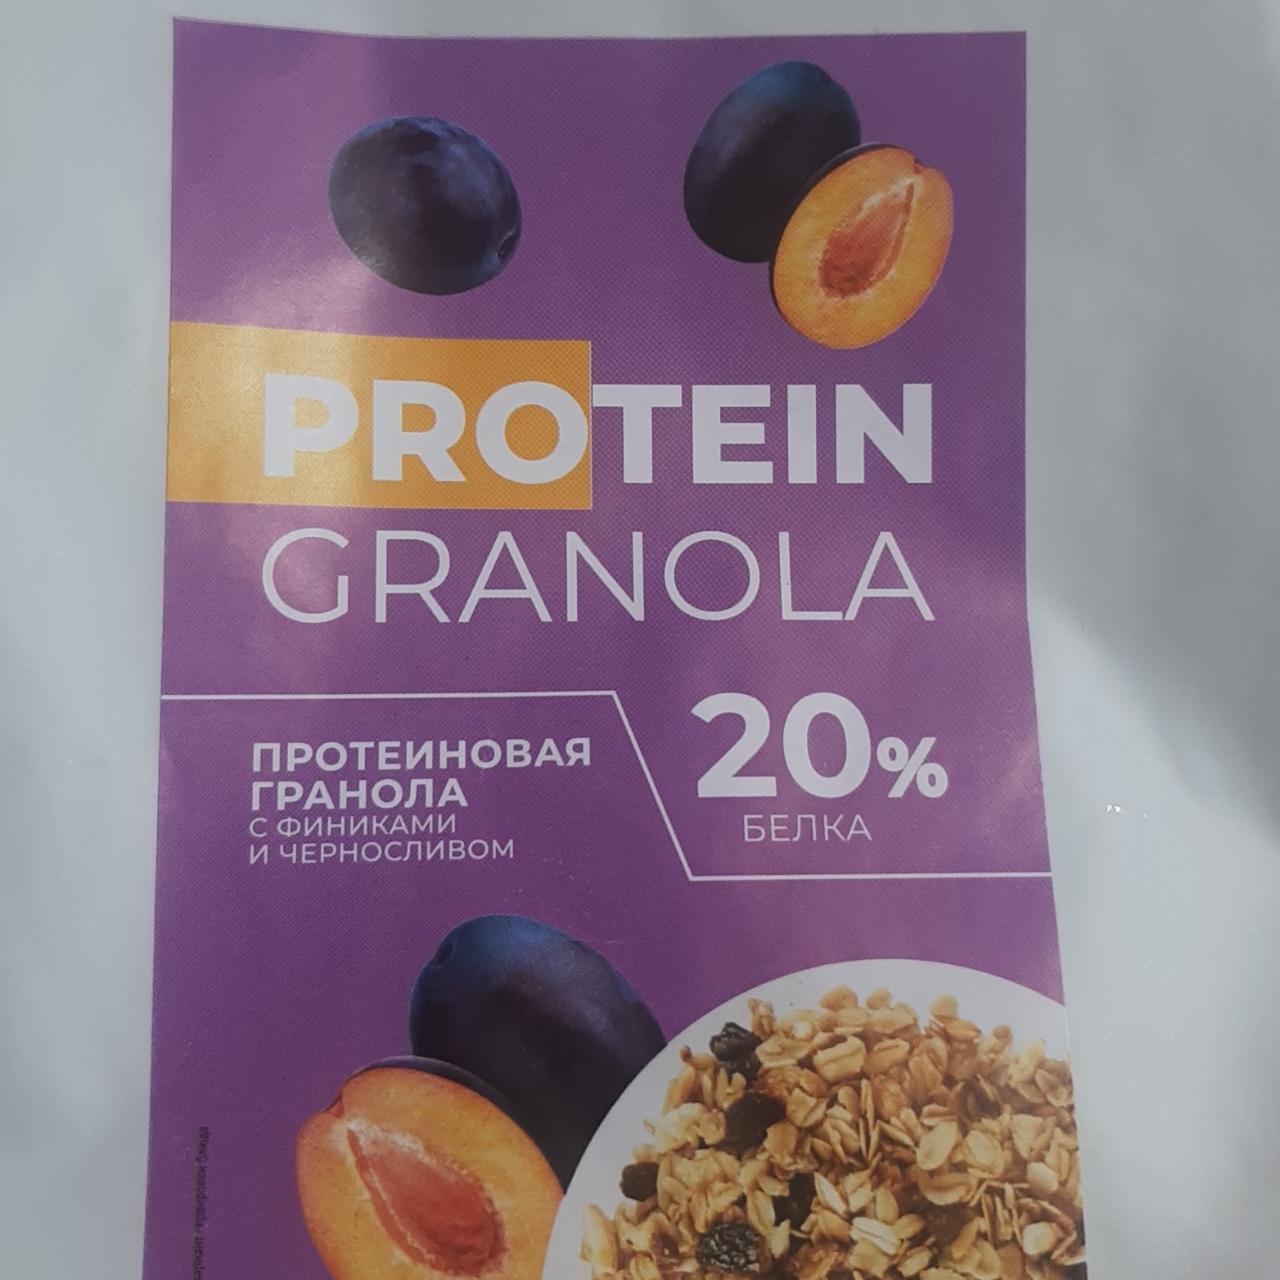 Фото - Protein granola